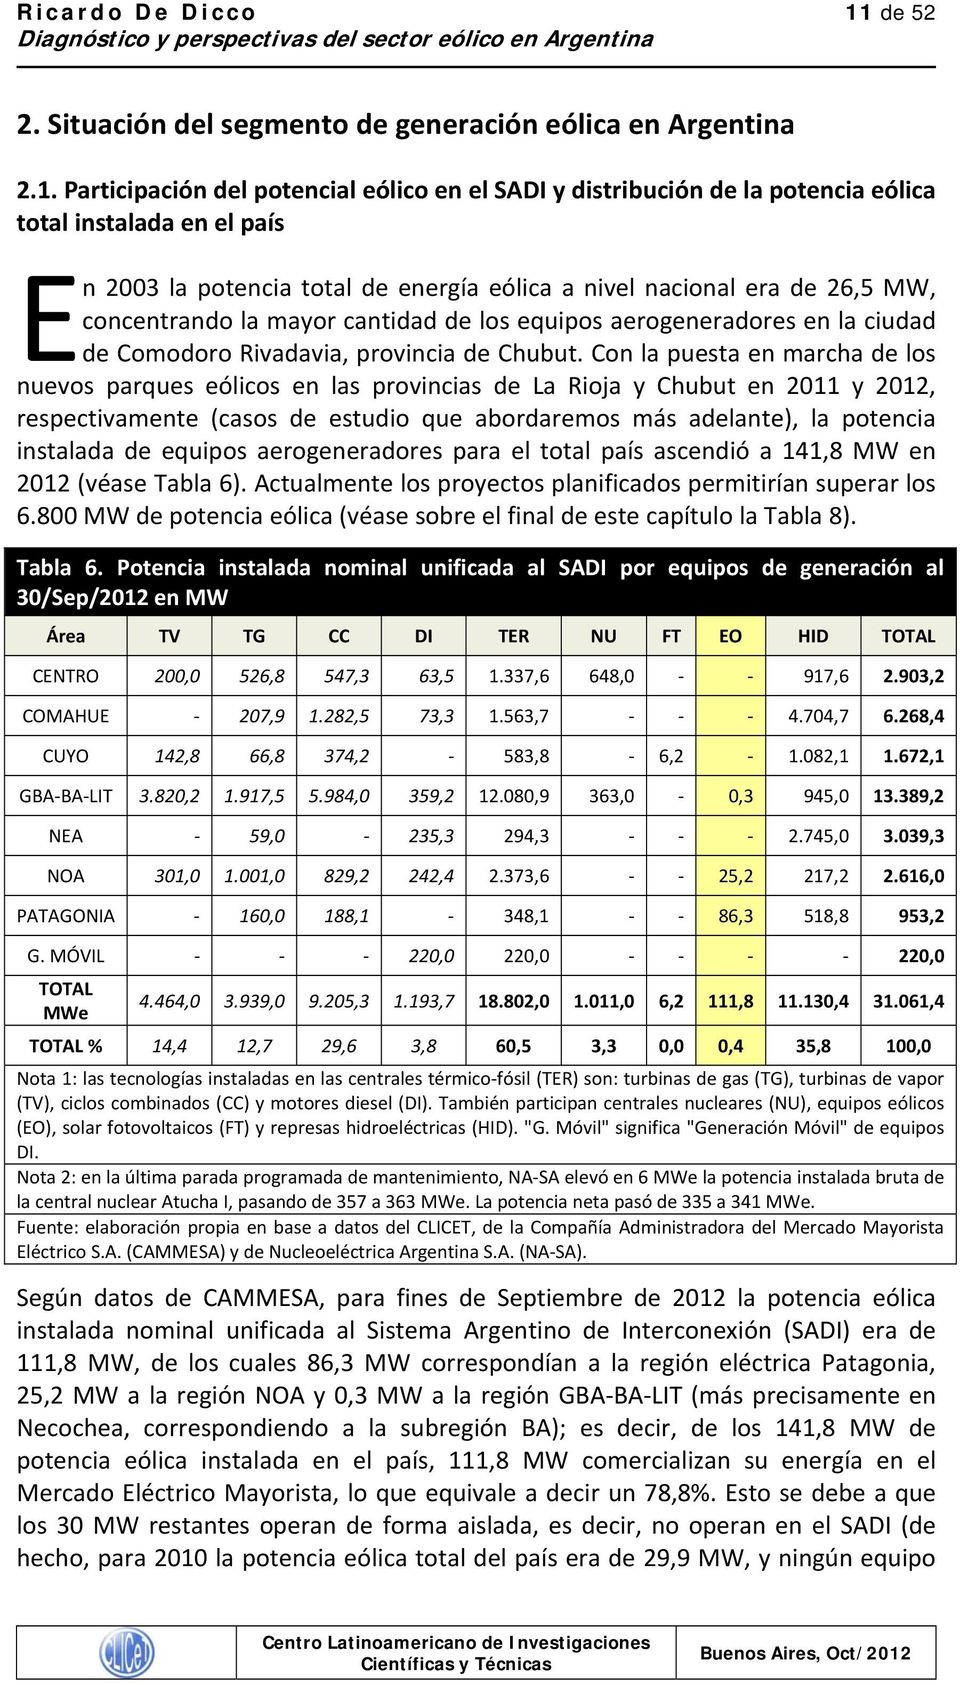 Con la puesta en marcha de los nuevos parques eólicos en las provincias de La Rioja y Chubut en 2011 y 2012, respectivamente (casos de estudio que abordaremos más adelante), la potencia instalada de